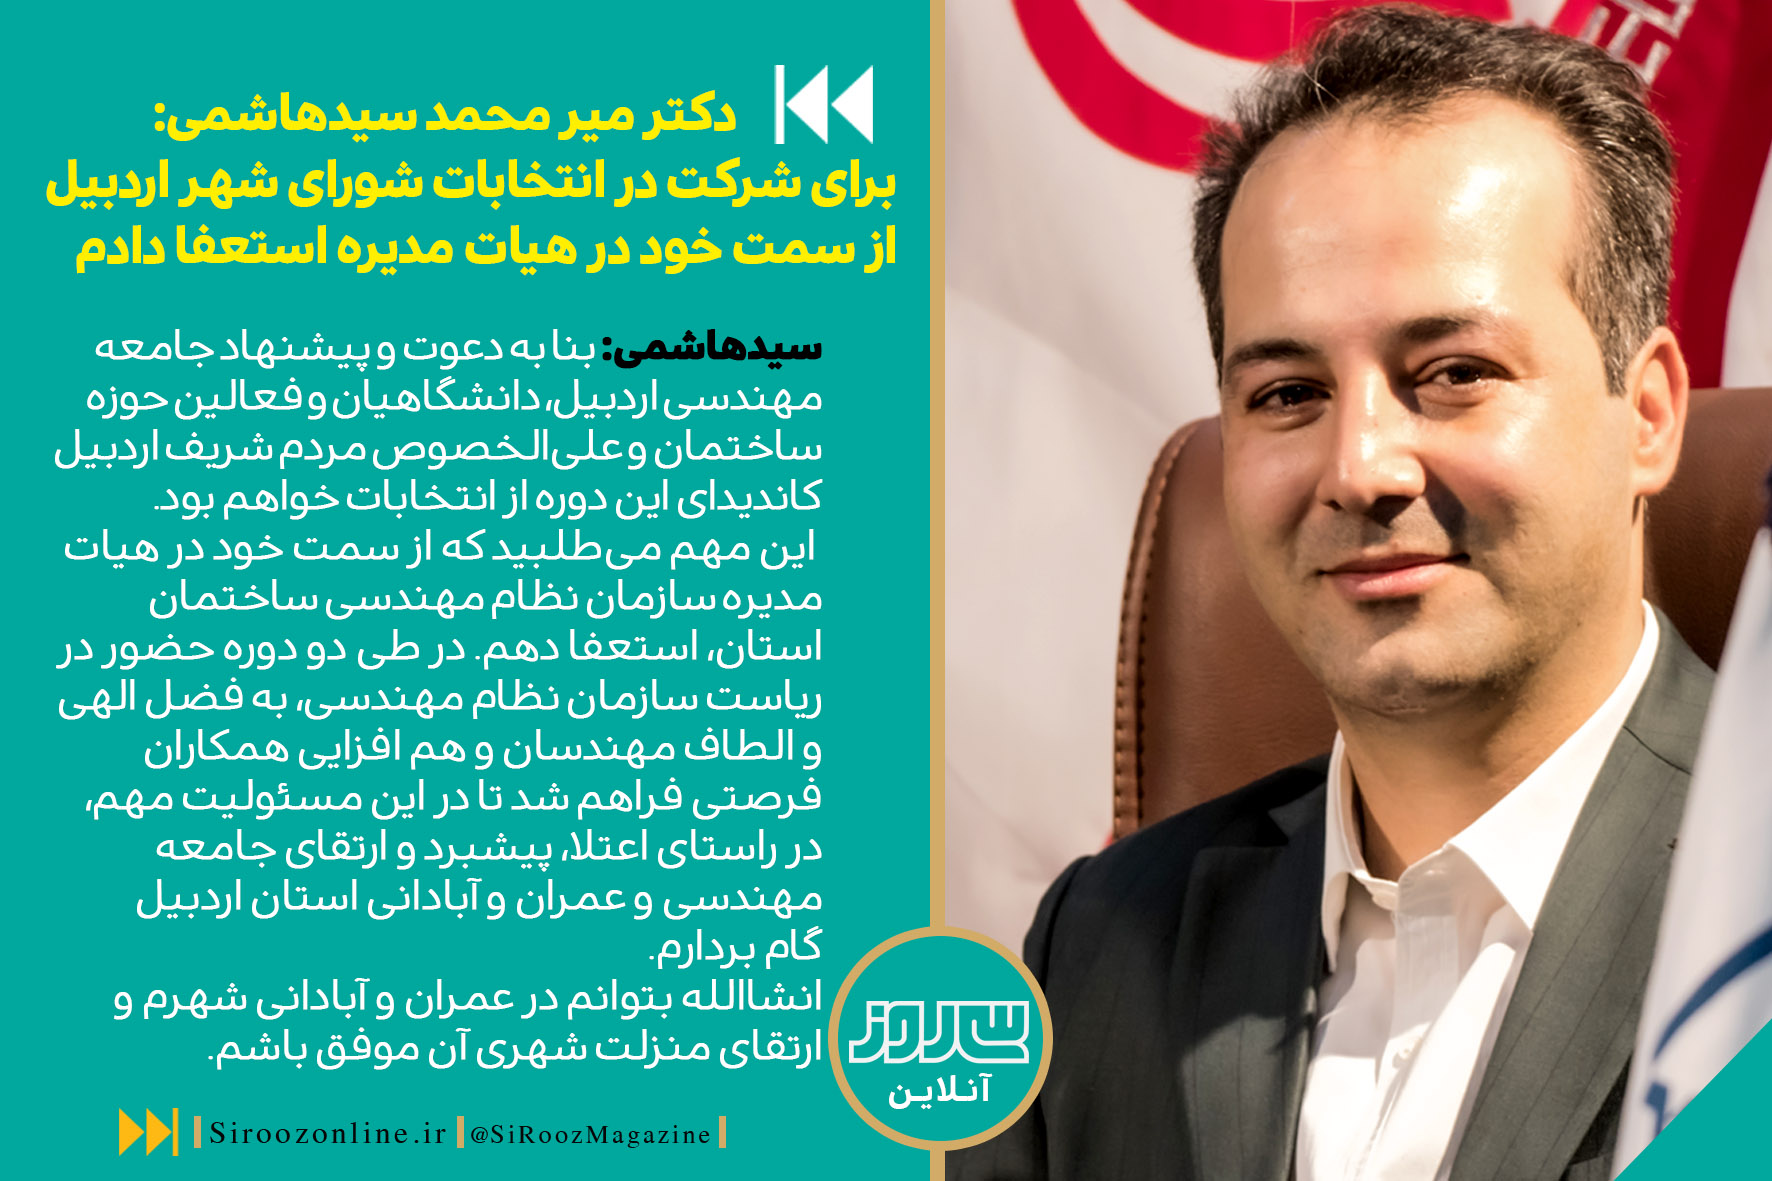  برای شرکت در انتخابات شورای شهر اردبیل  از سمت خود در هیات مدیره استعفا دادم